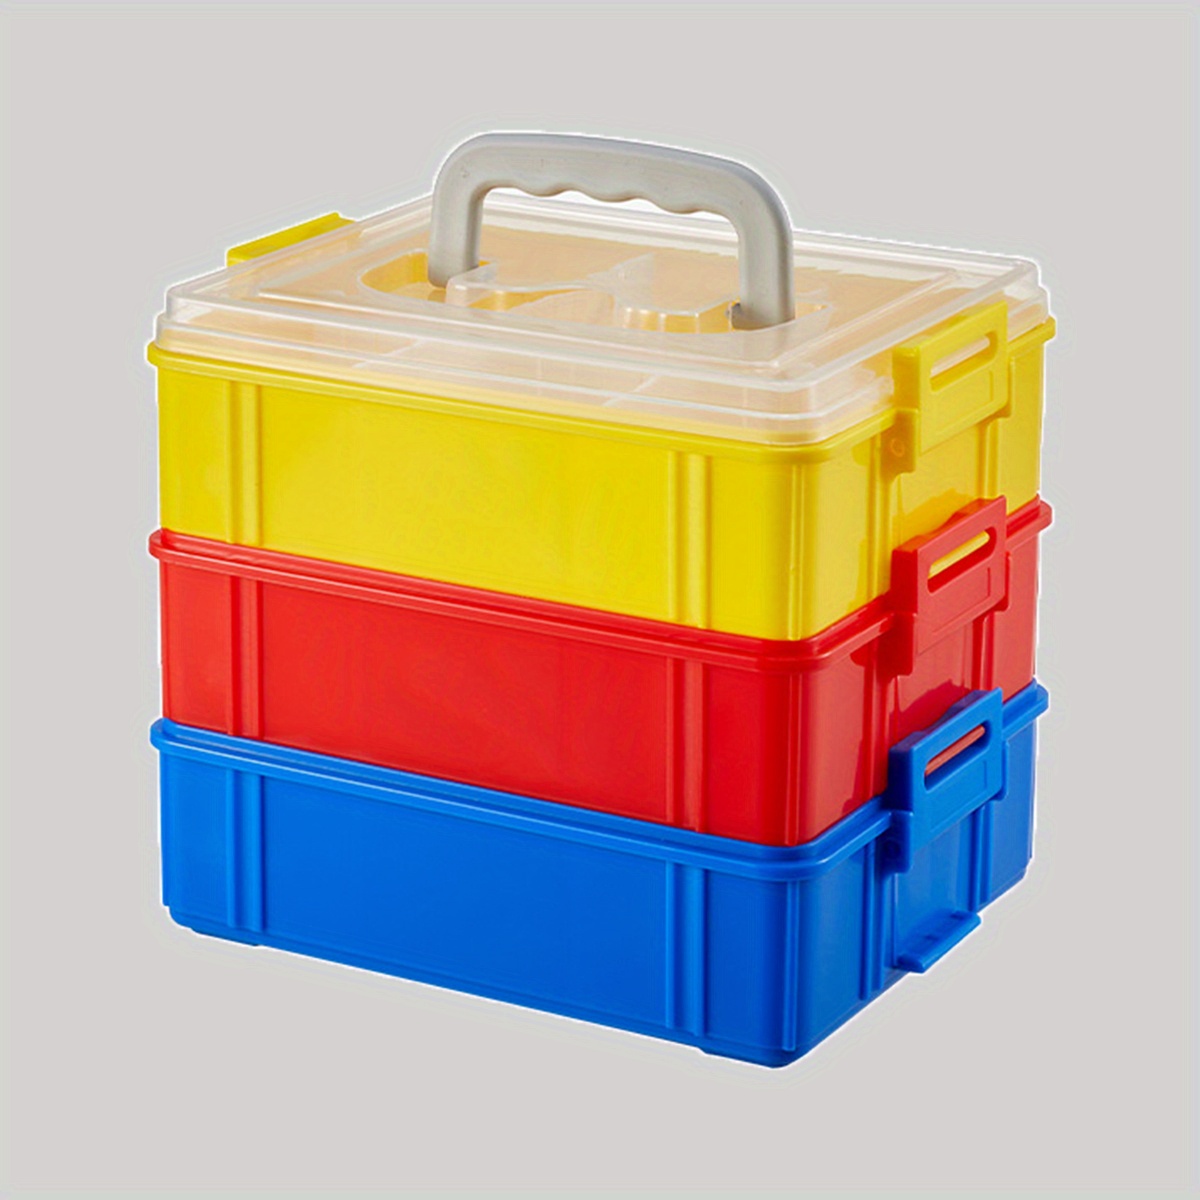  Arts & Crafts Storage Boxes & Organizers - Orange / Arts &  Crafts Storage Boxes : Arts, Crafts & Sewing